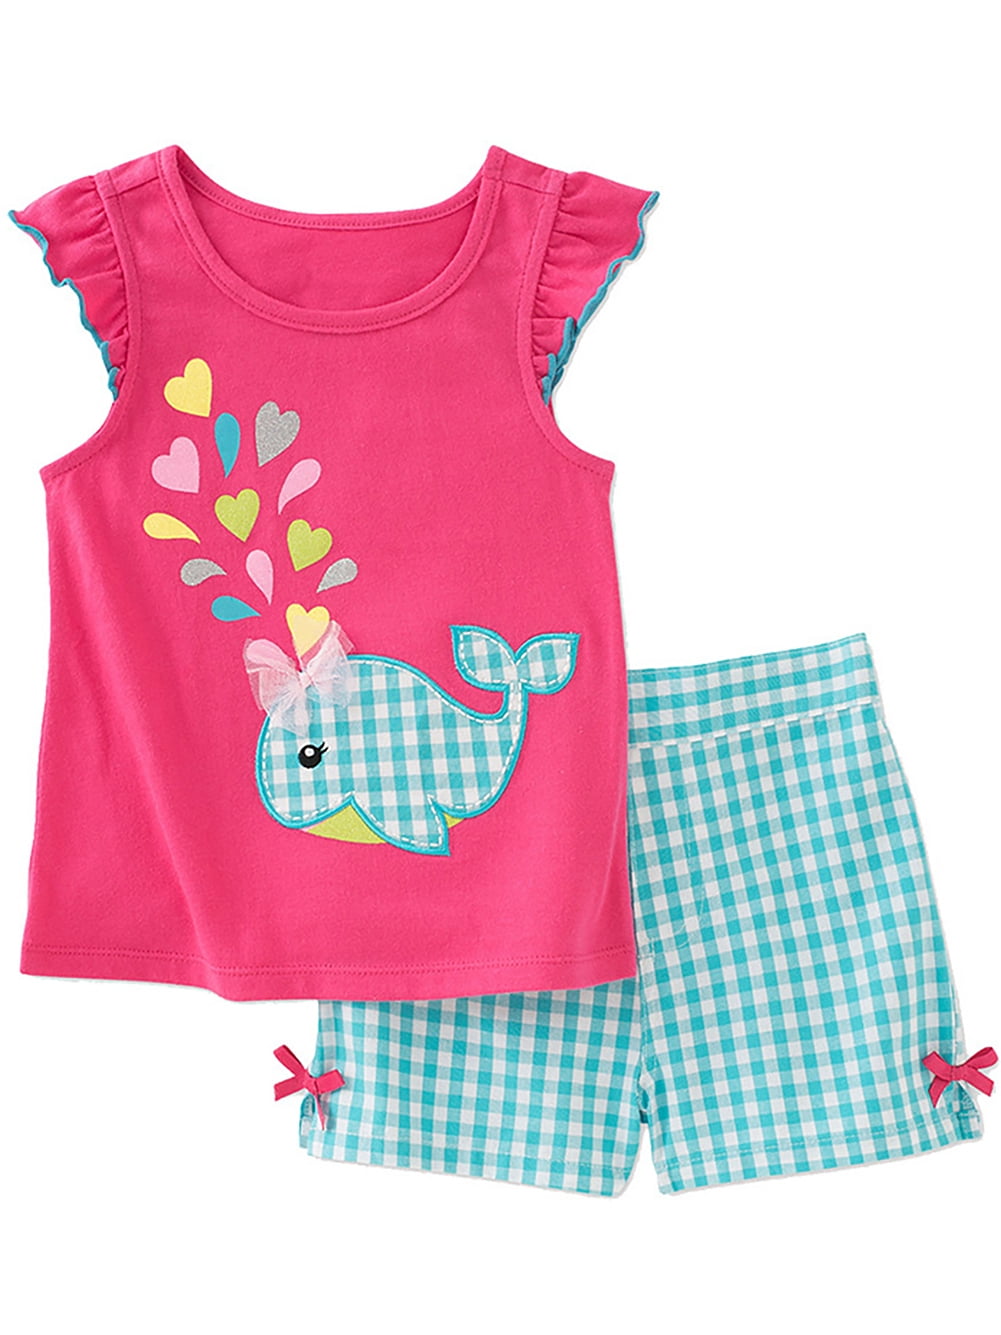 ENFLASH 2-7Y Toddler Girls 2-Piece Summer Pajamas 100% Cotton Short Pjs ...